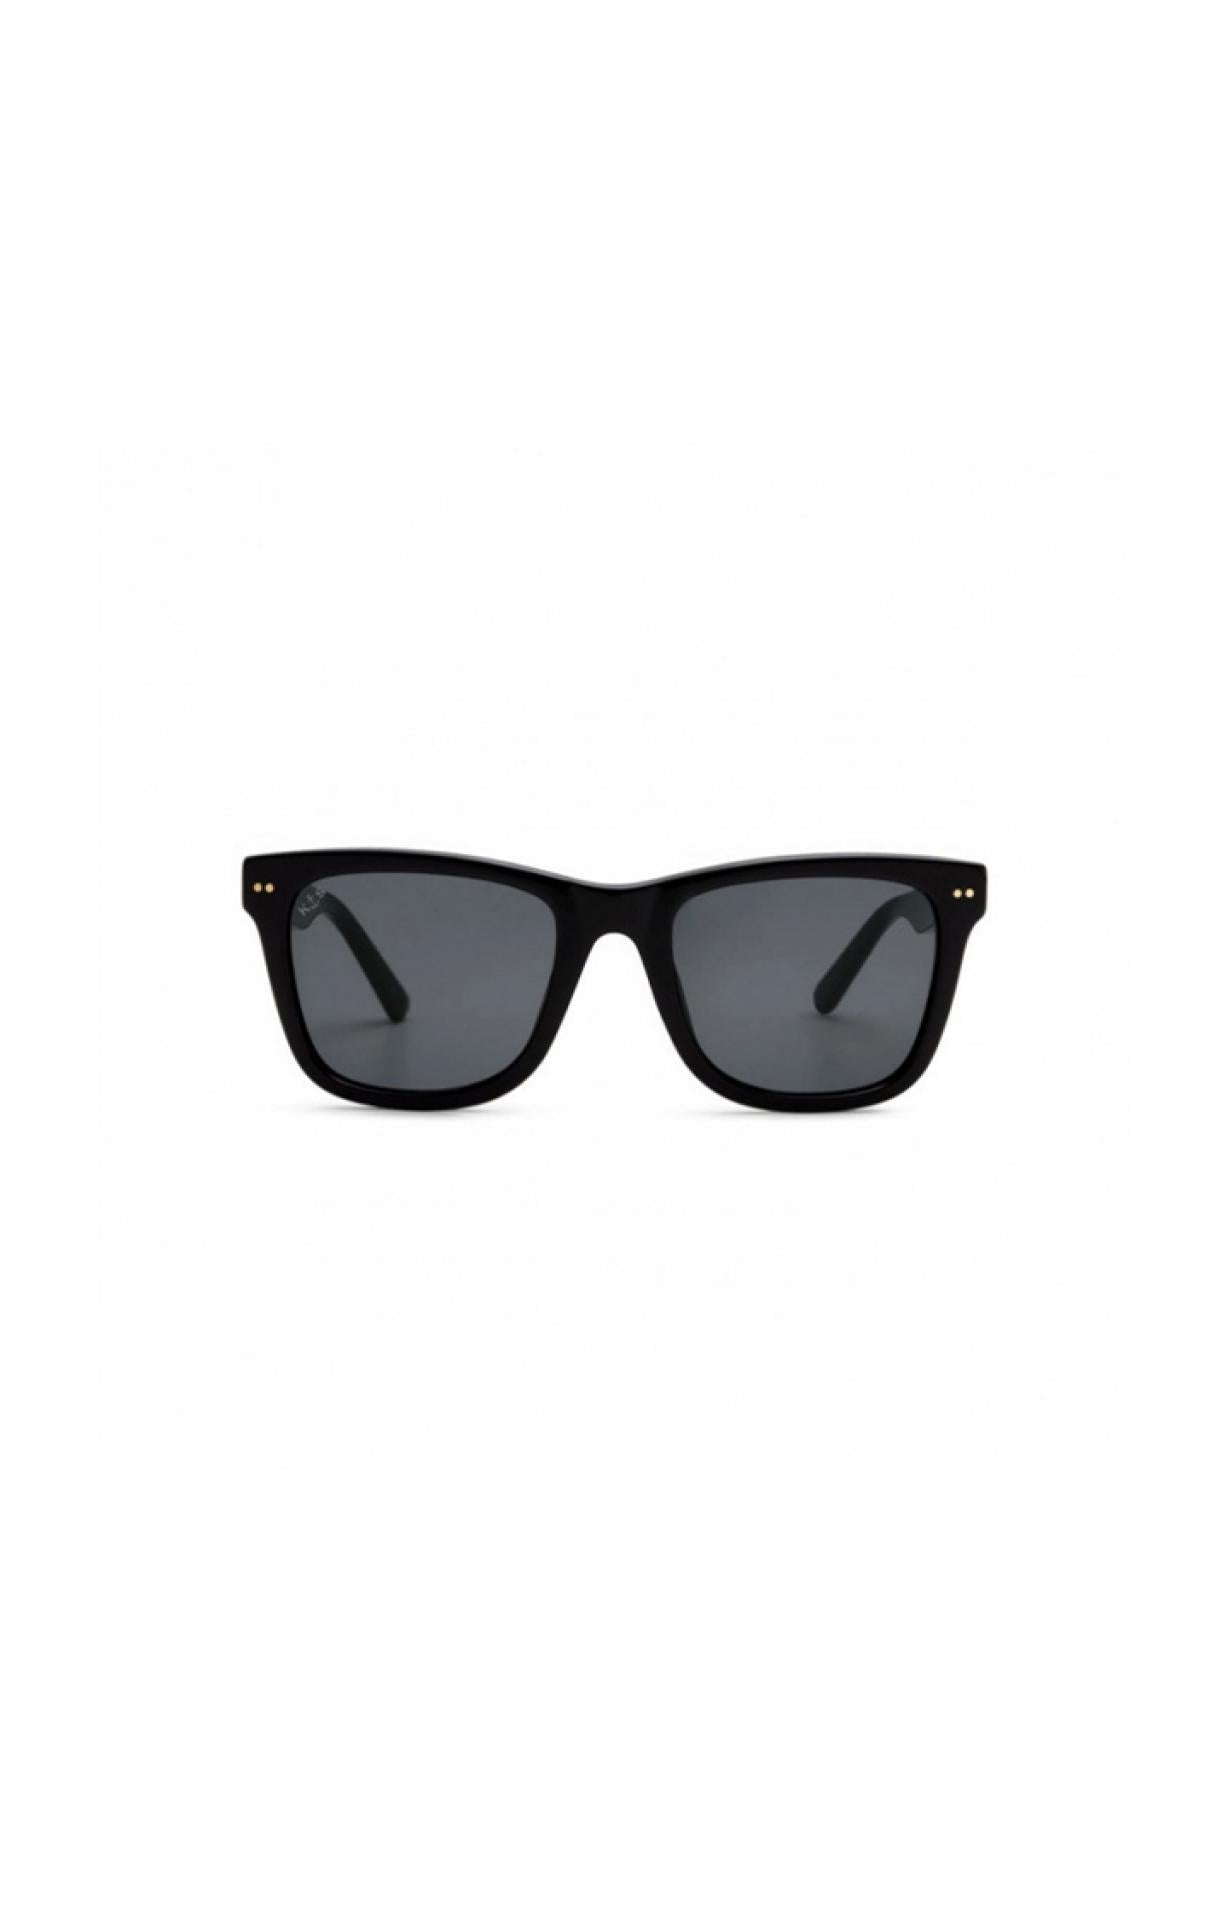 Sonnenbrille Malibu All Black